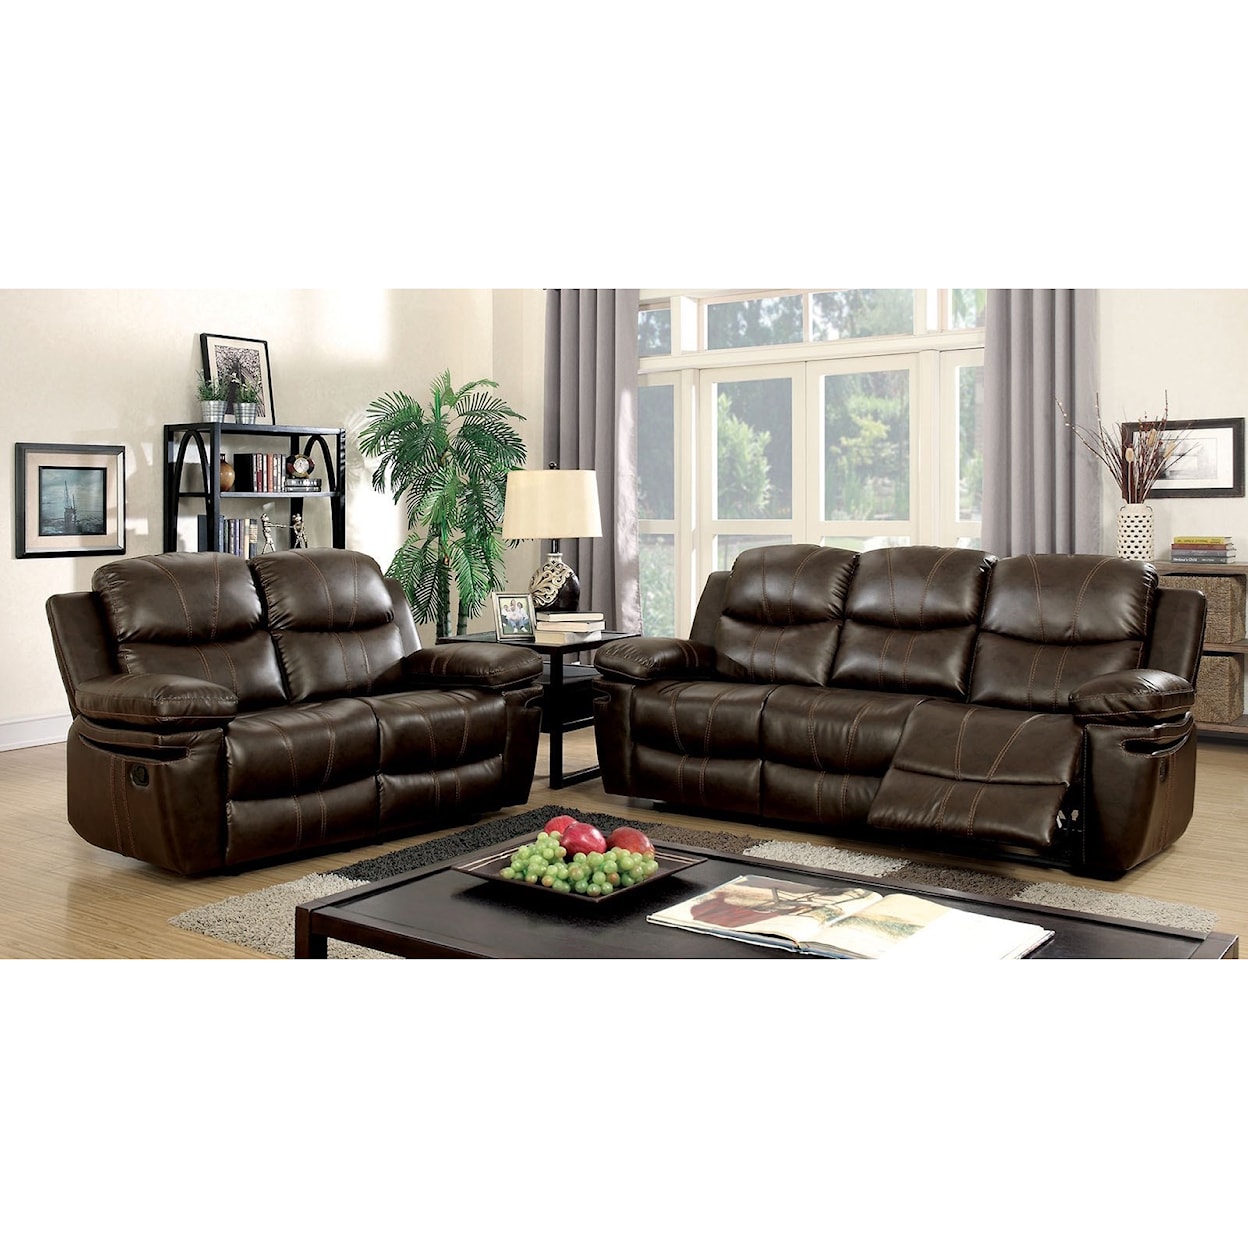 Furniture of America Listowel Living Room Set